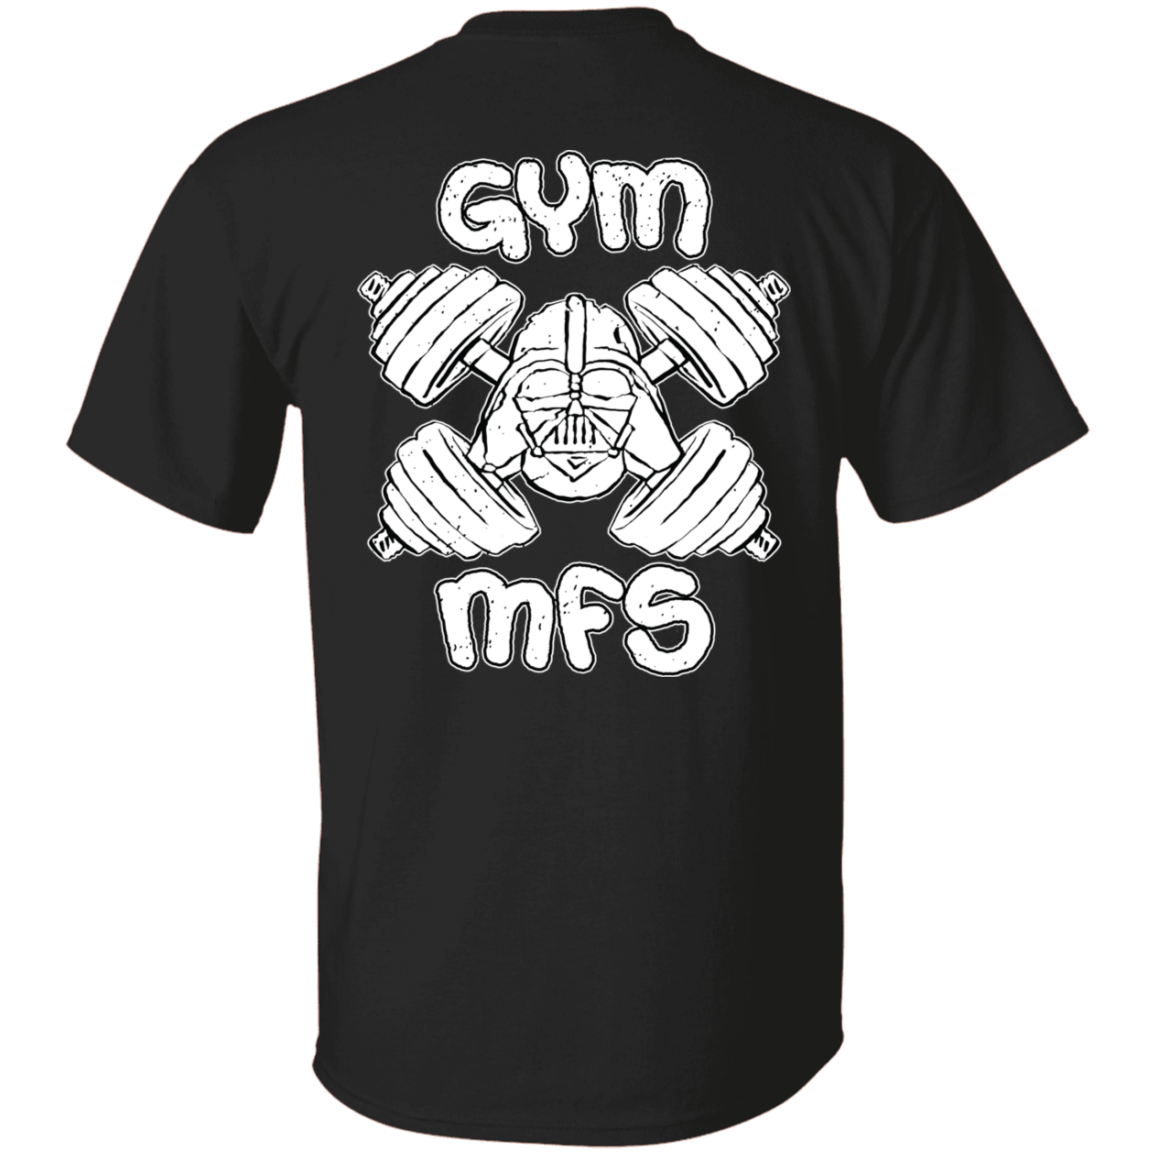 GYM MFS Dark Side Gym T-Shirt